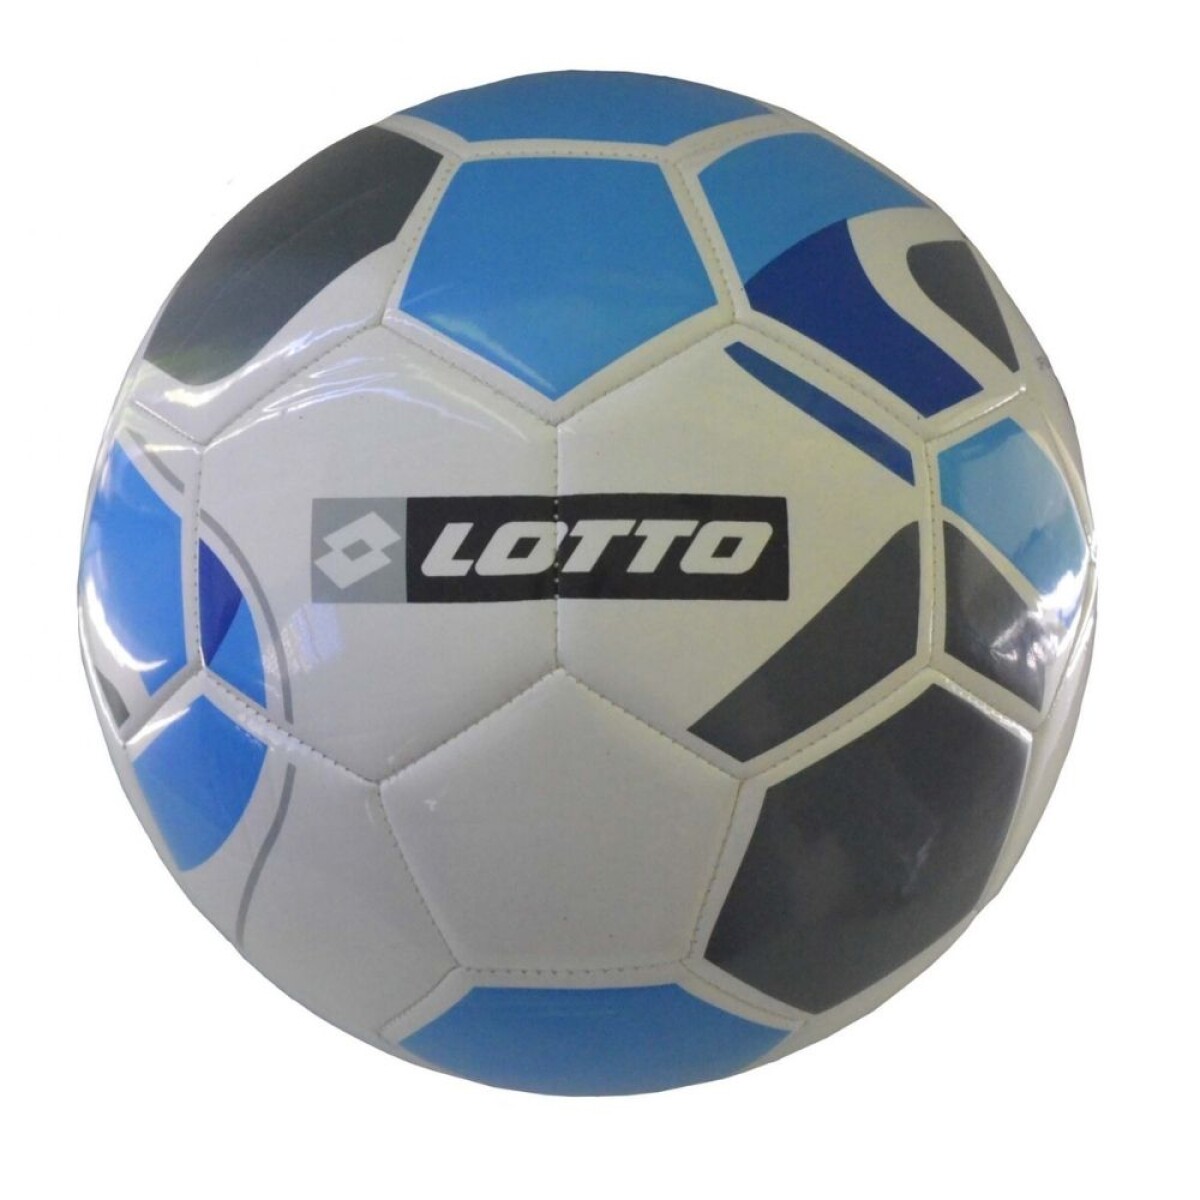 Pelota Lotto Futbol Nº5 Ciao Blanco/Azul - S/C 